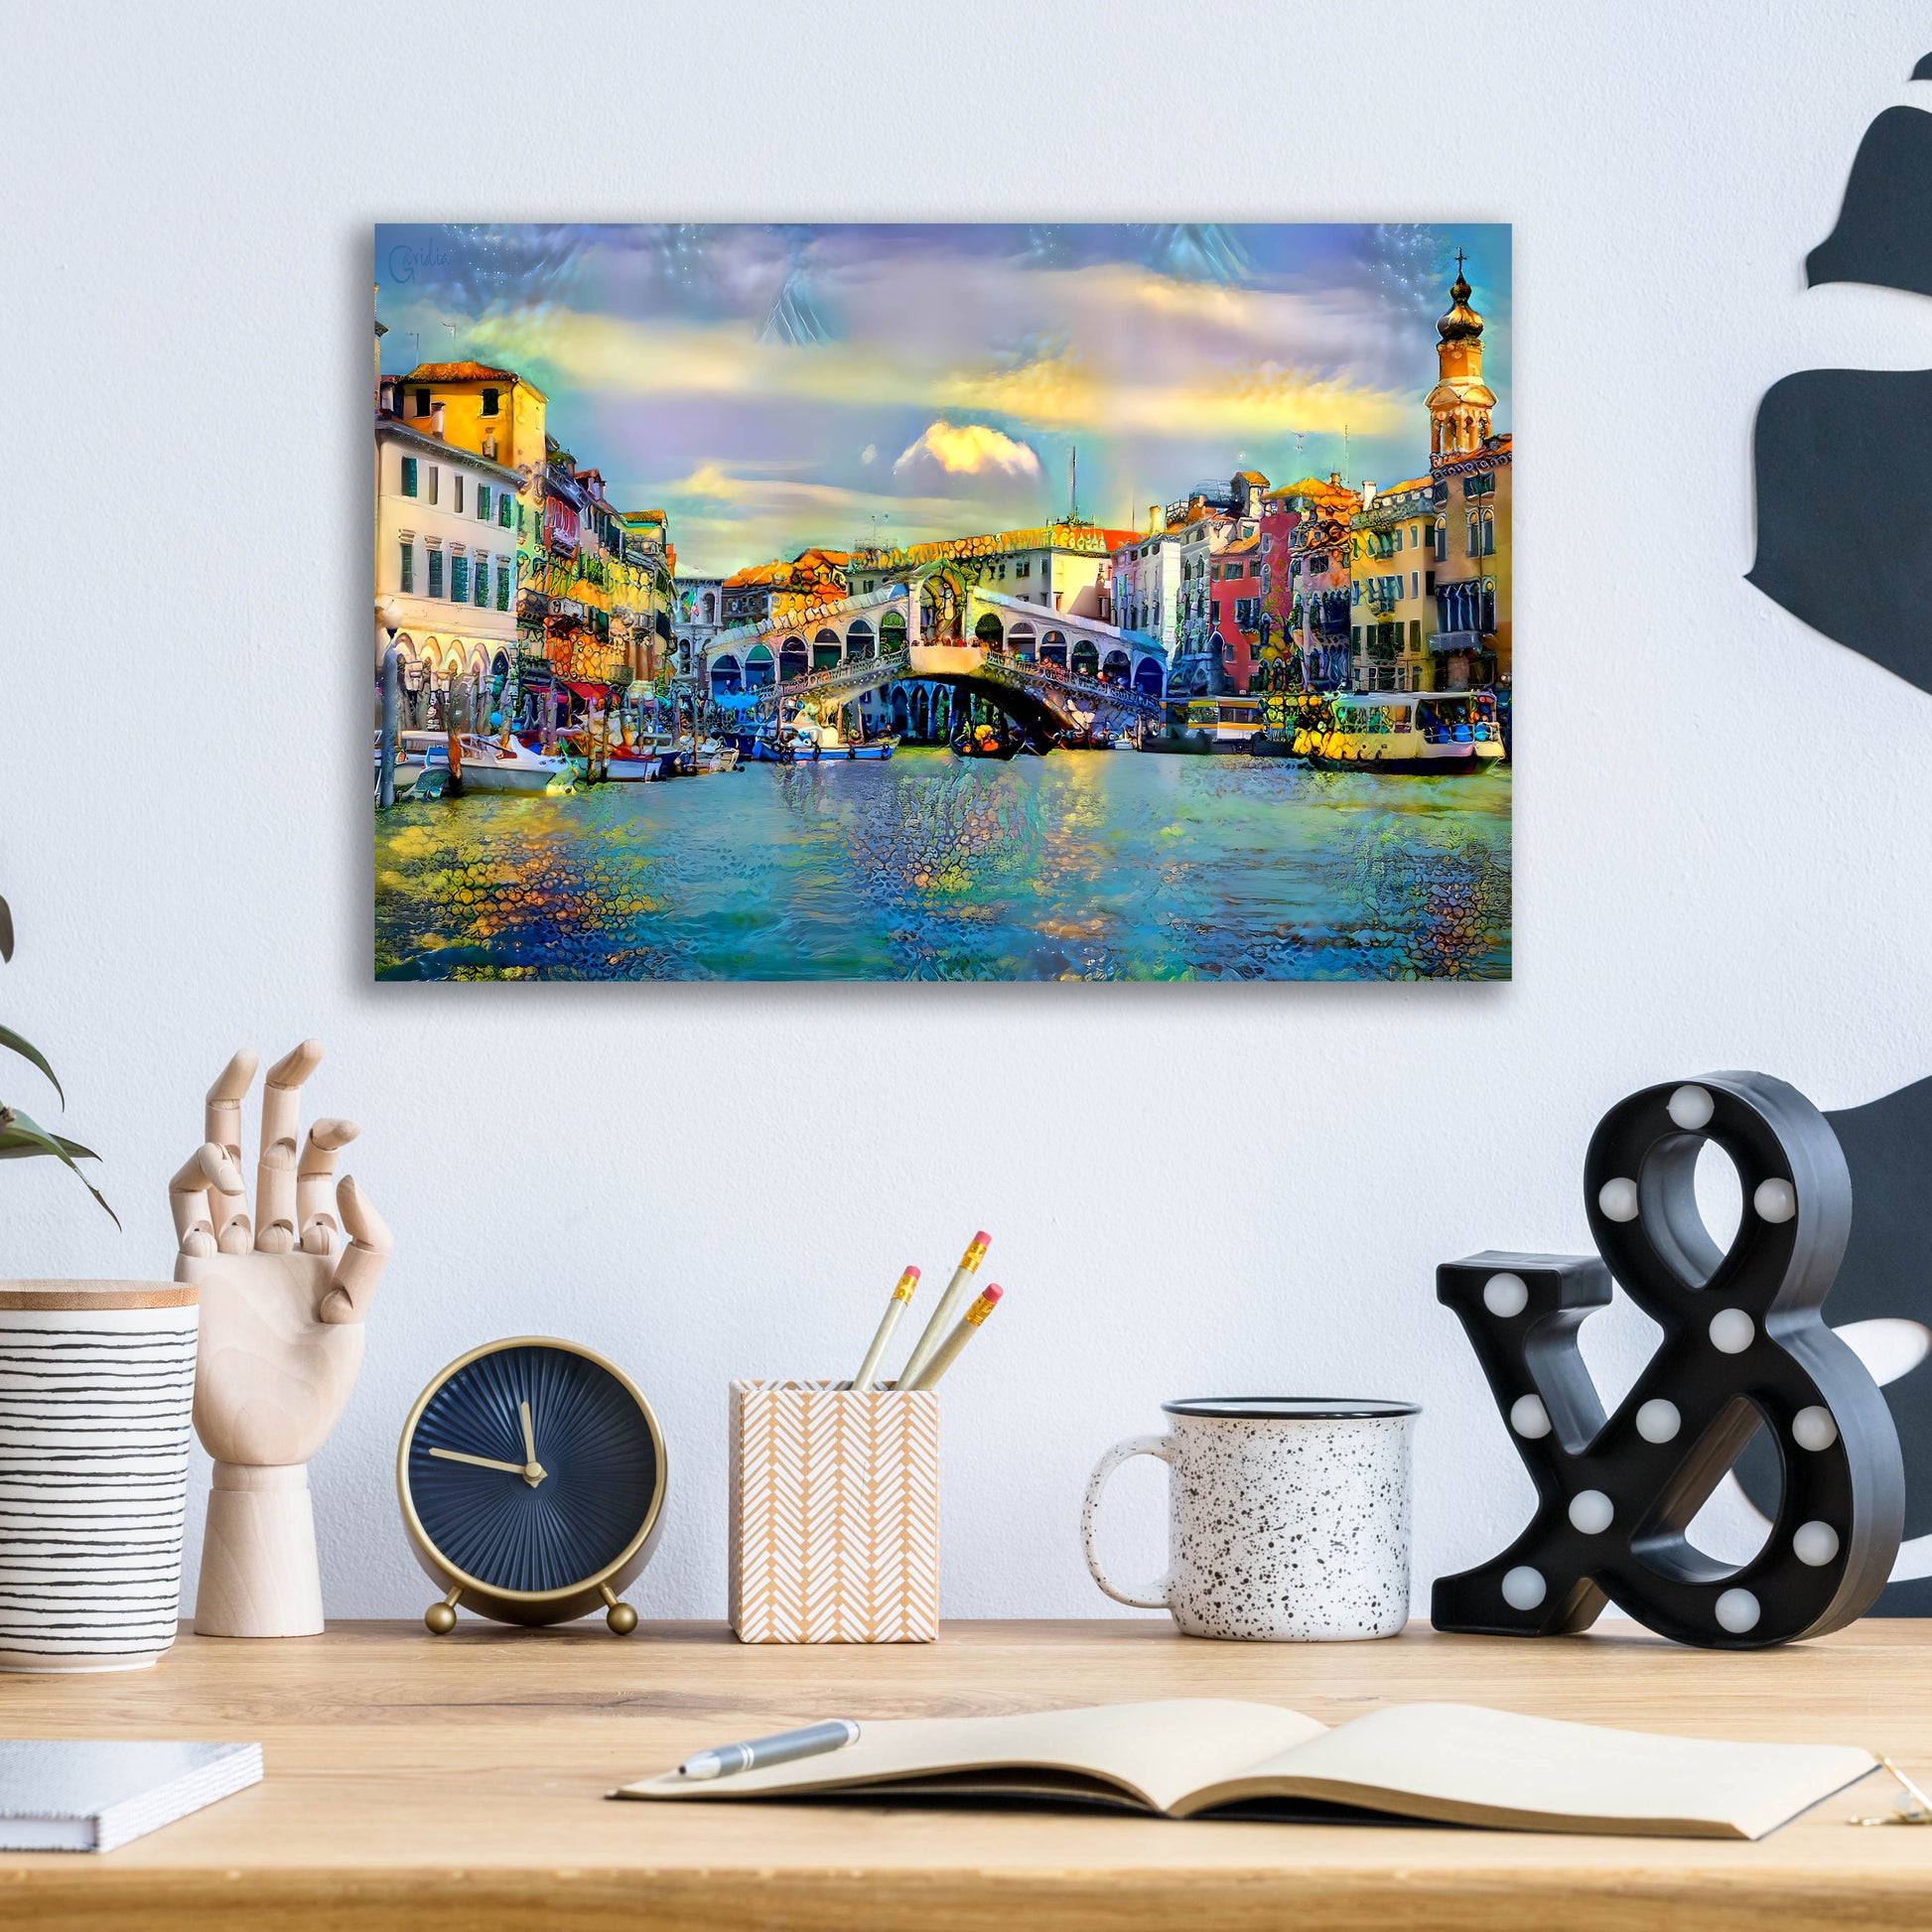 Epic Art 'Venice Italy Rialto Bridge' by Pedro Gavidia, Acrylic Glass Wall Art,16x12